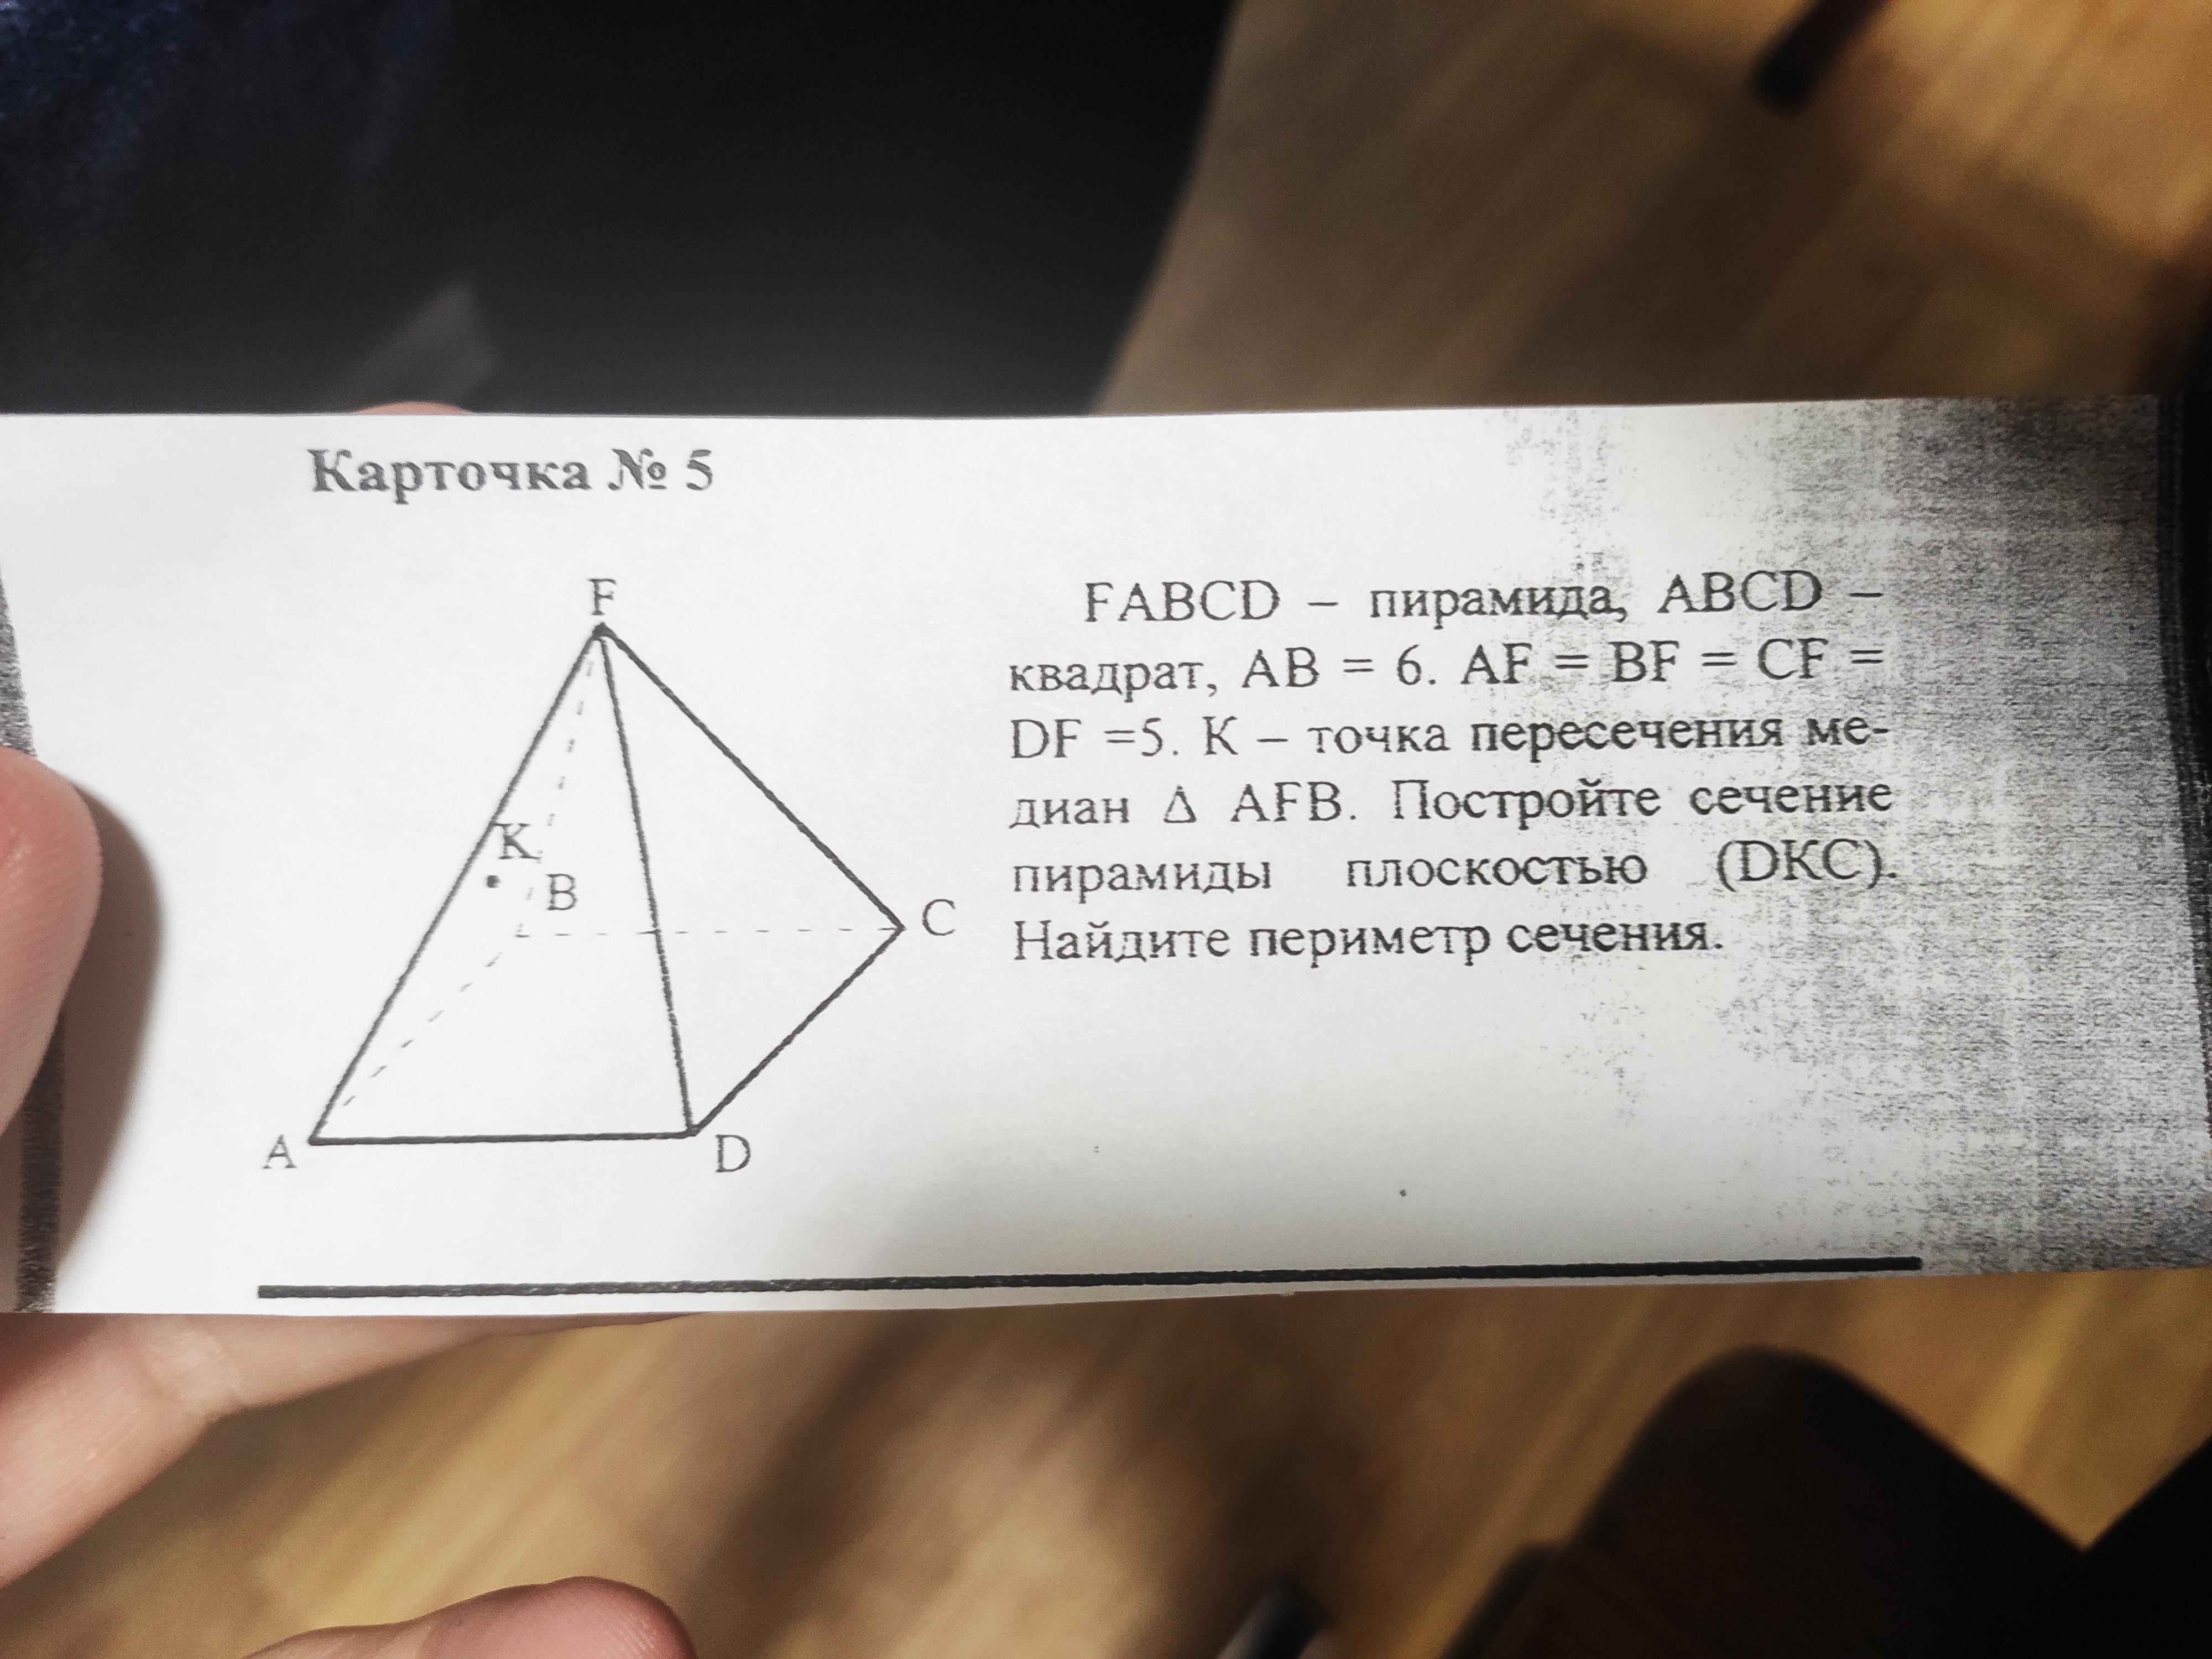 FABCD пирамида ABCD квадрат. .Дано: FABCD - пирамида. Найти периметр сечения пирамиды.